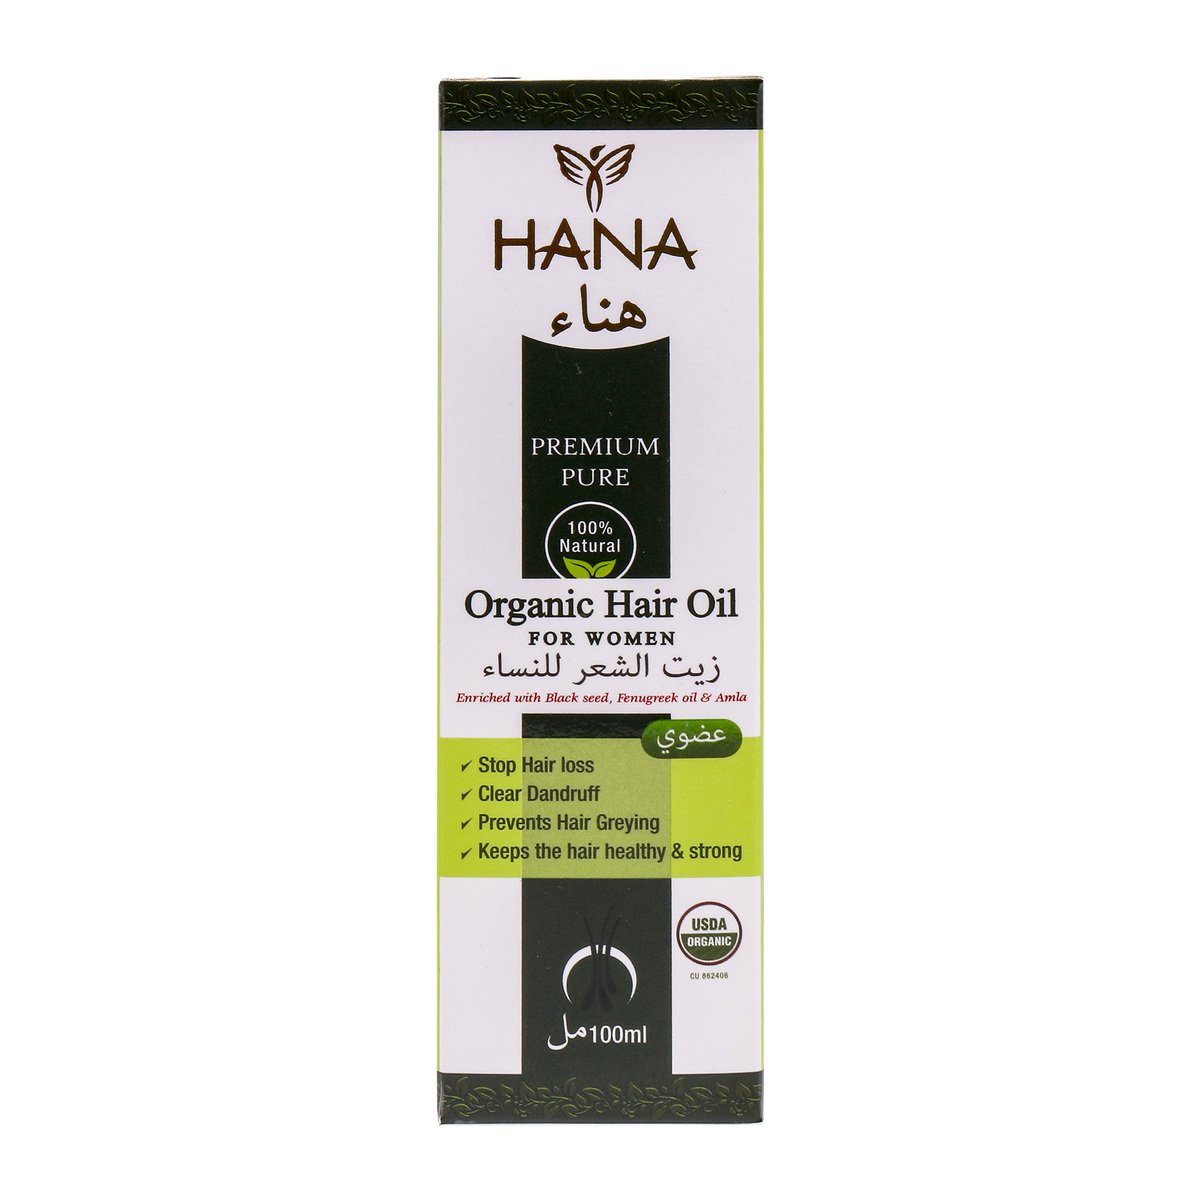 Hana Organic Hair Oil for Women 100ml